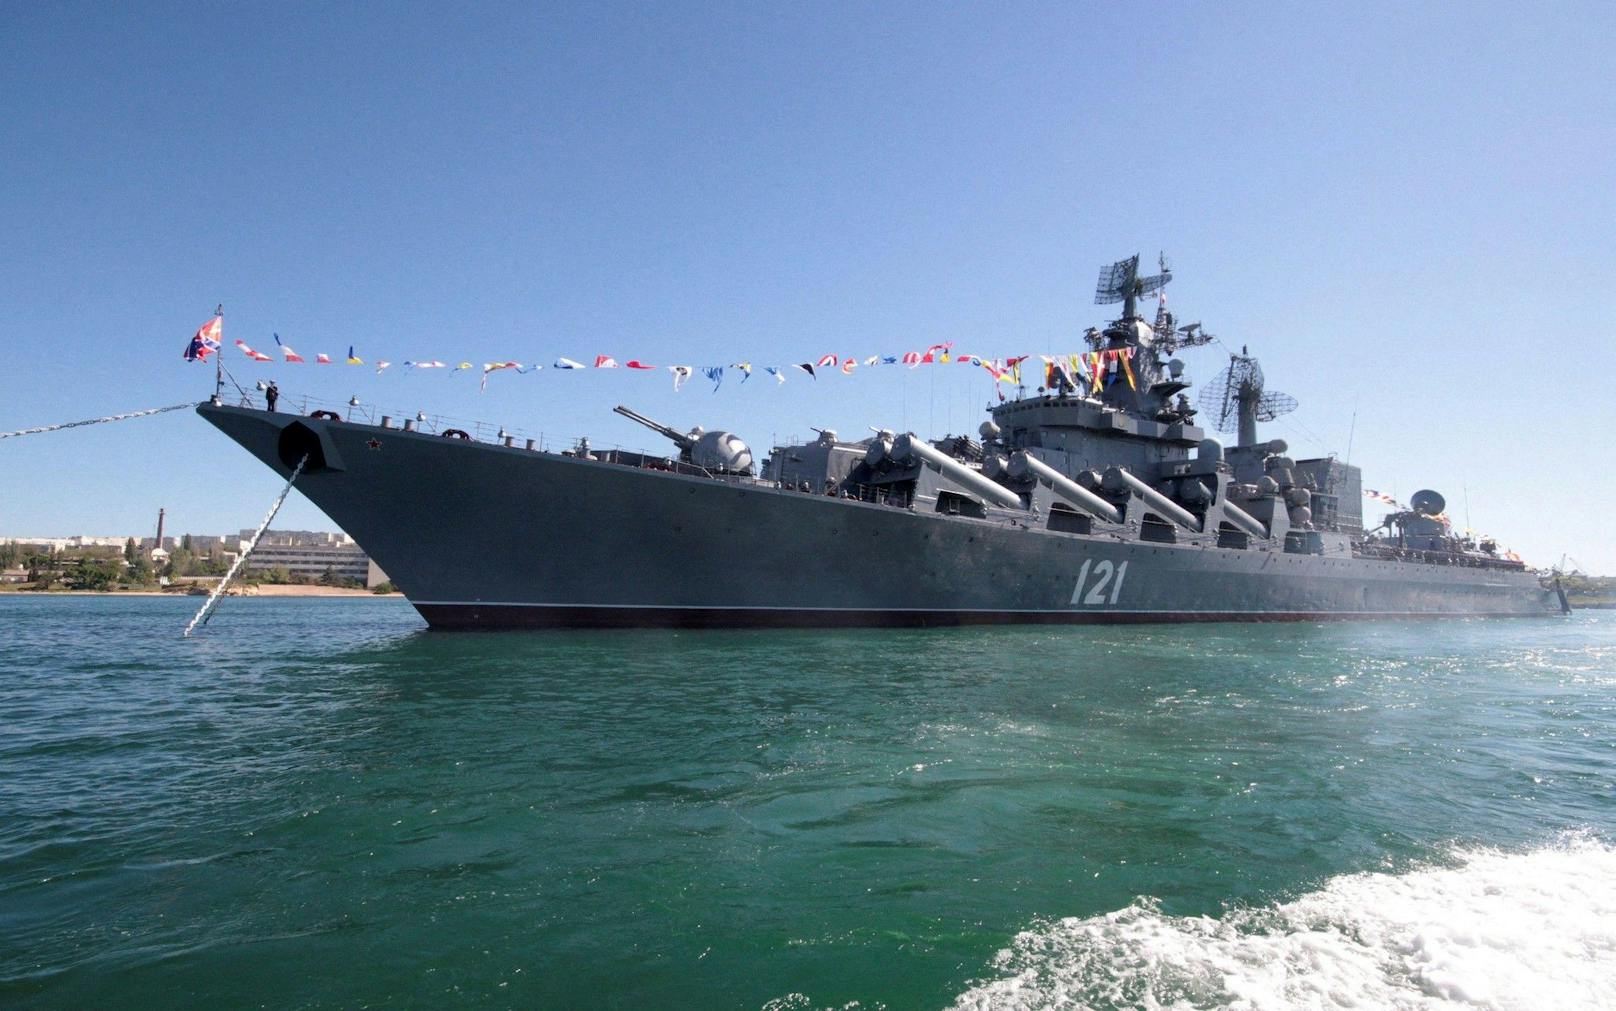 Das Flaggschiff der Schwarzmeerflotte ist nach Angaben der russischen Nachrichtenagentur Tass gesunken.